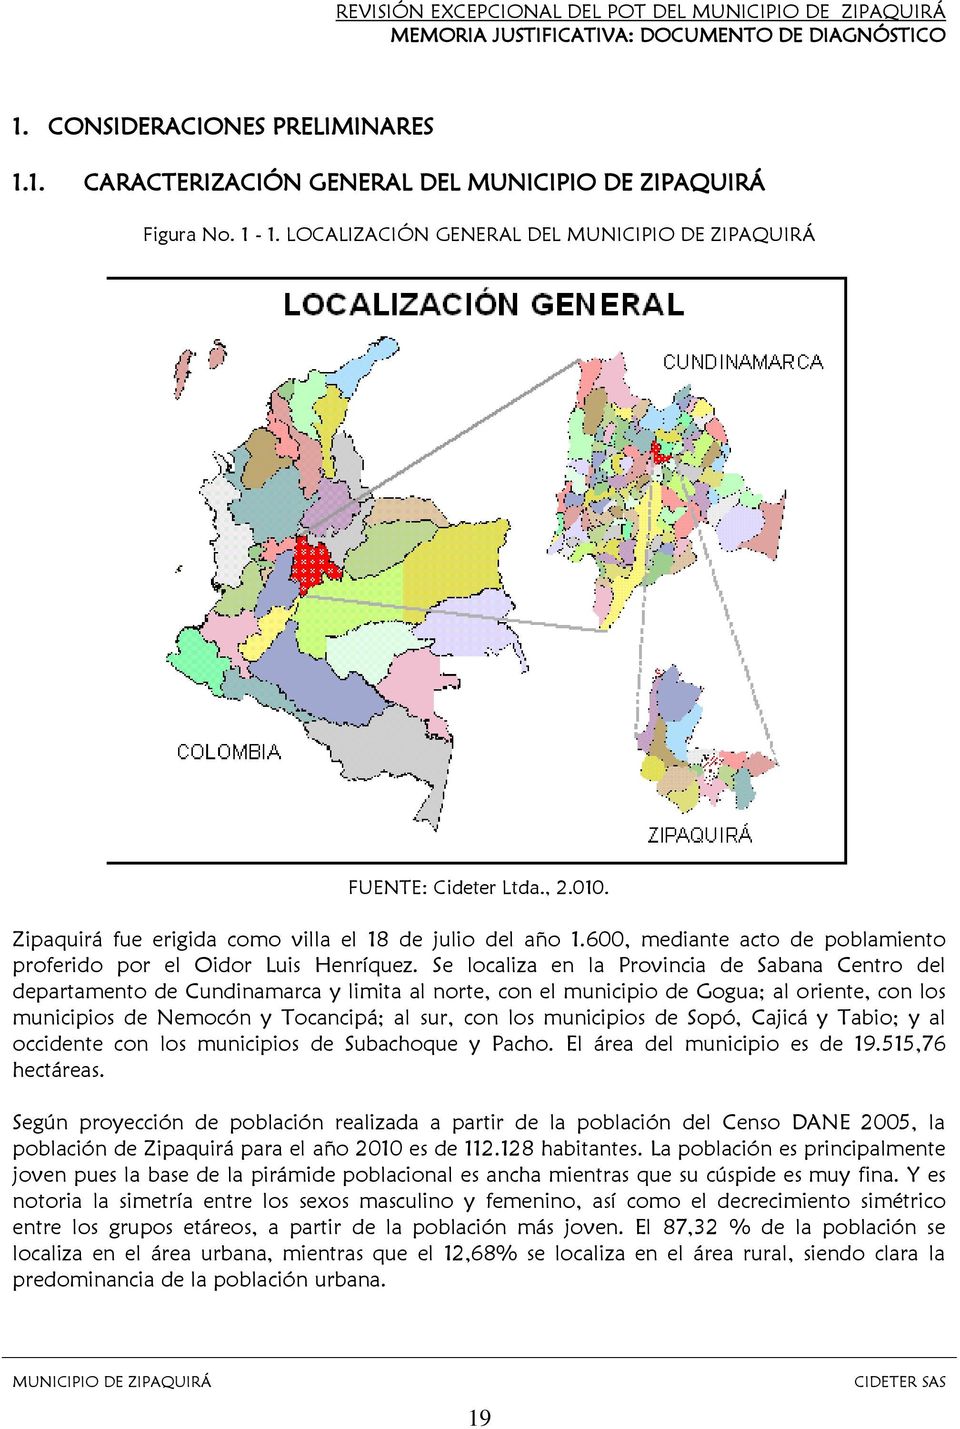 Se localiza en la Provincia de Sabana Centro del departamento de Cundinamarca y limita al norte, con el municipio de Gogua; al oriente, con los municipios de Nemocón y Tocancipá; al sur, con los